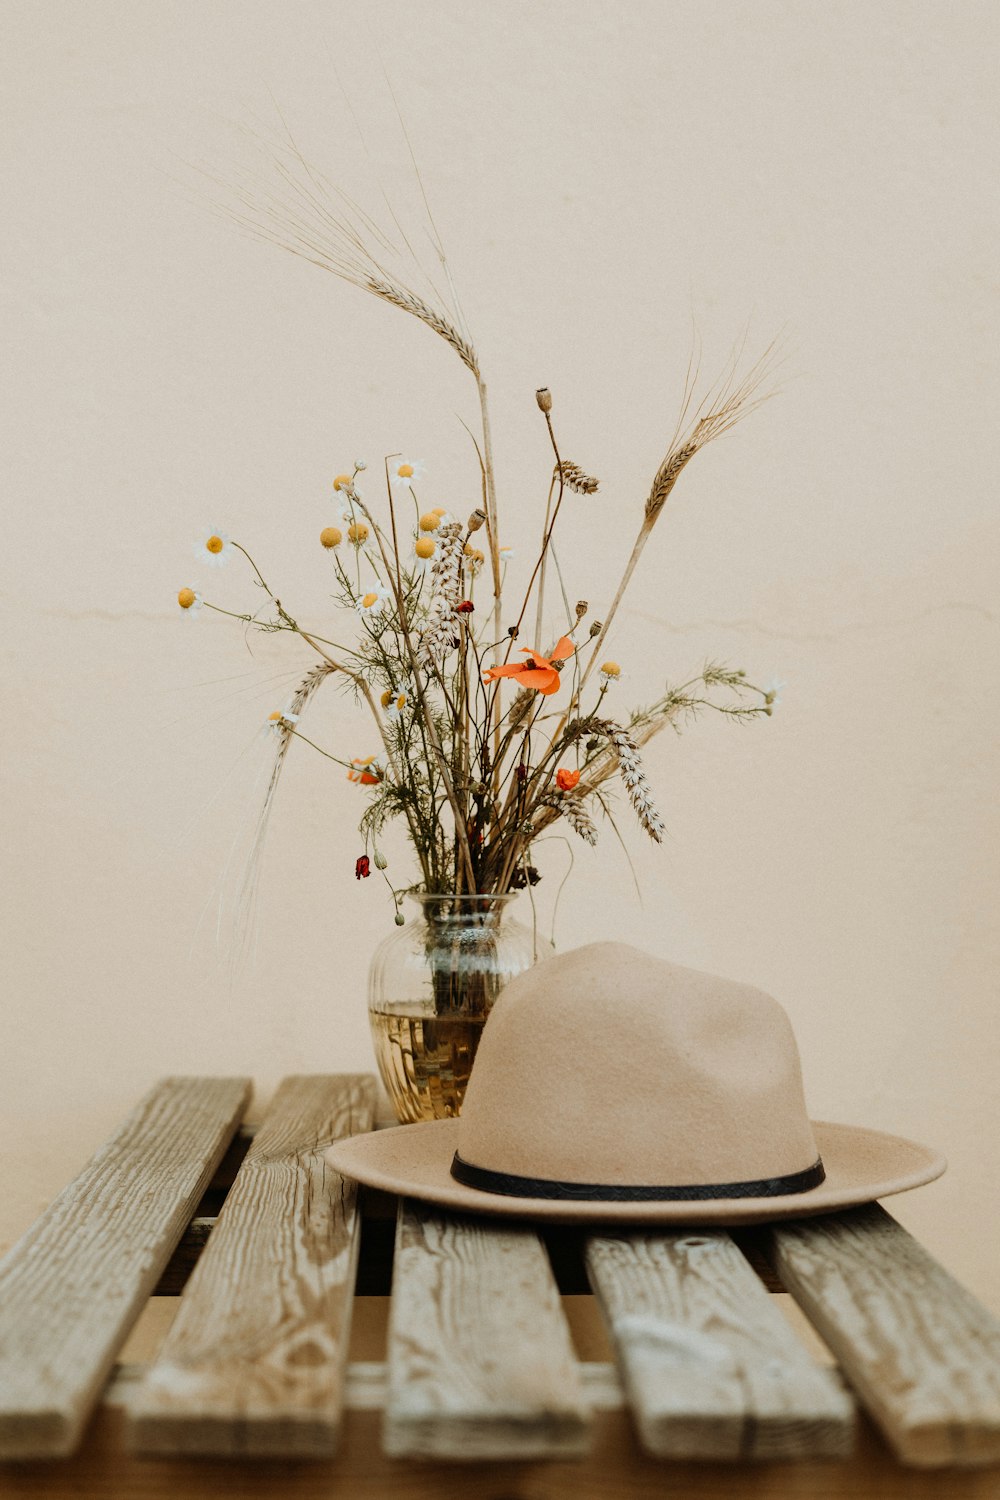 cappello marrone sul tavolo di legno accanto al fiore in vaso